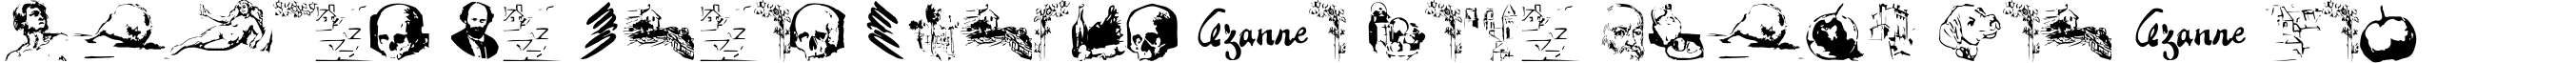 Пример написания шрифтом CezanneSketches текста на французском